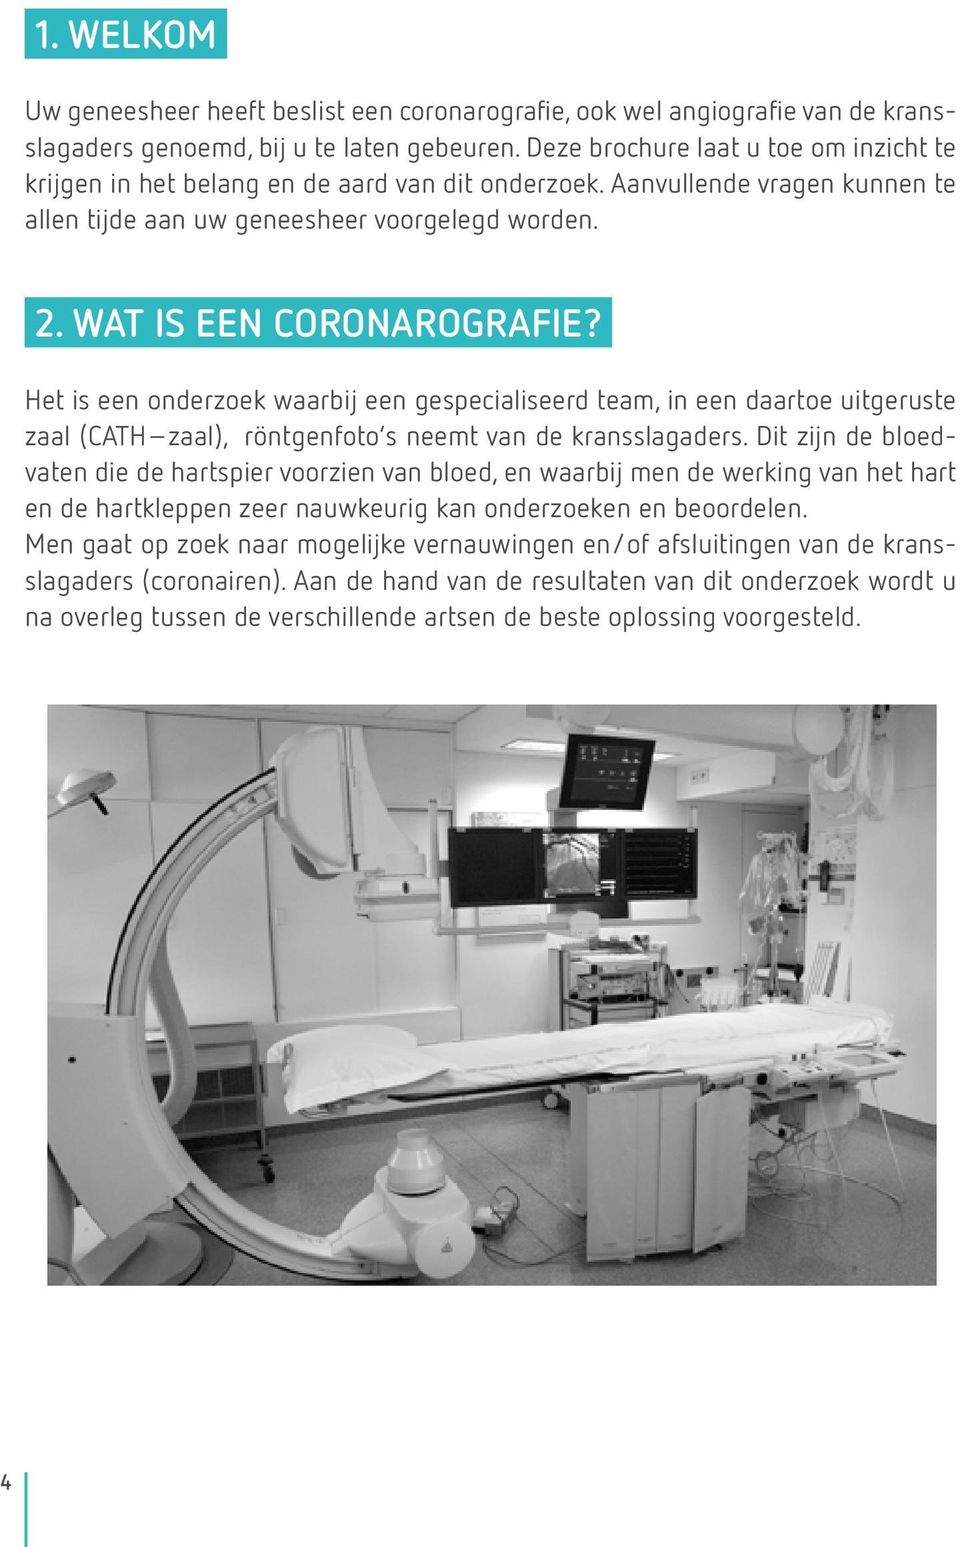 Het is een onderzoek waarbij een gespecialiseerd team, in een daartoe uitgeruste zaal (CATH zaal), röntgenfoto s neemt van de kransslagaders.